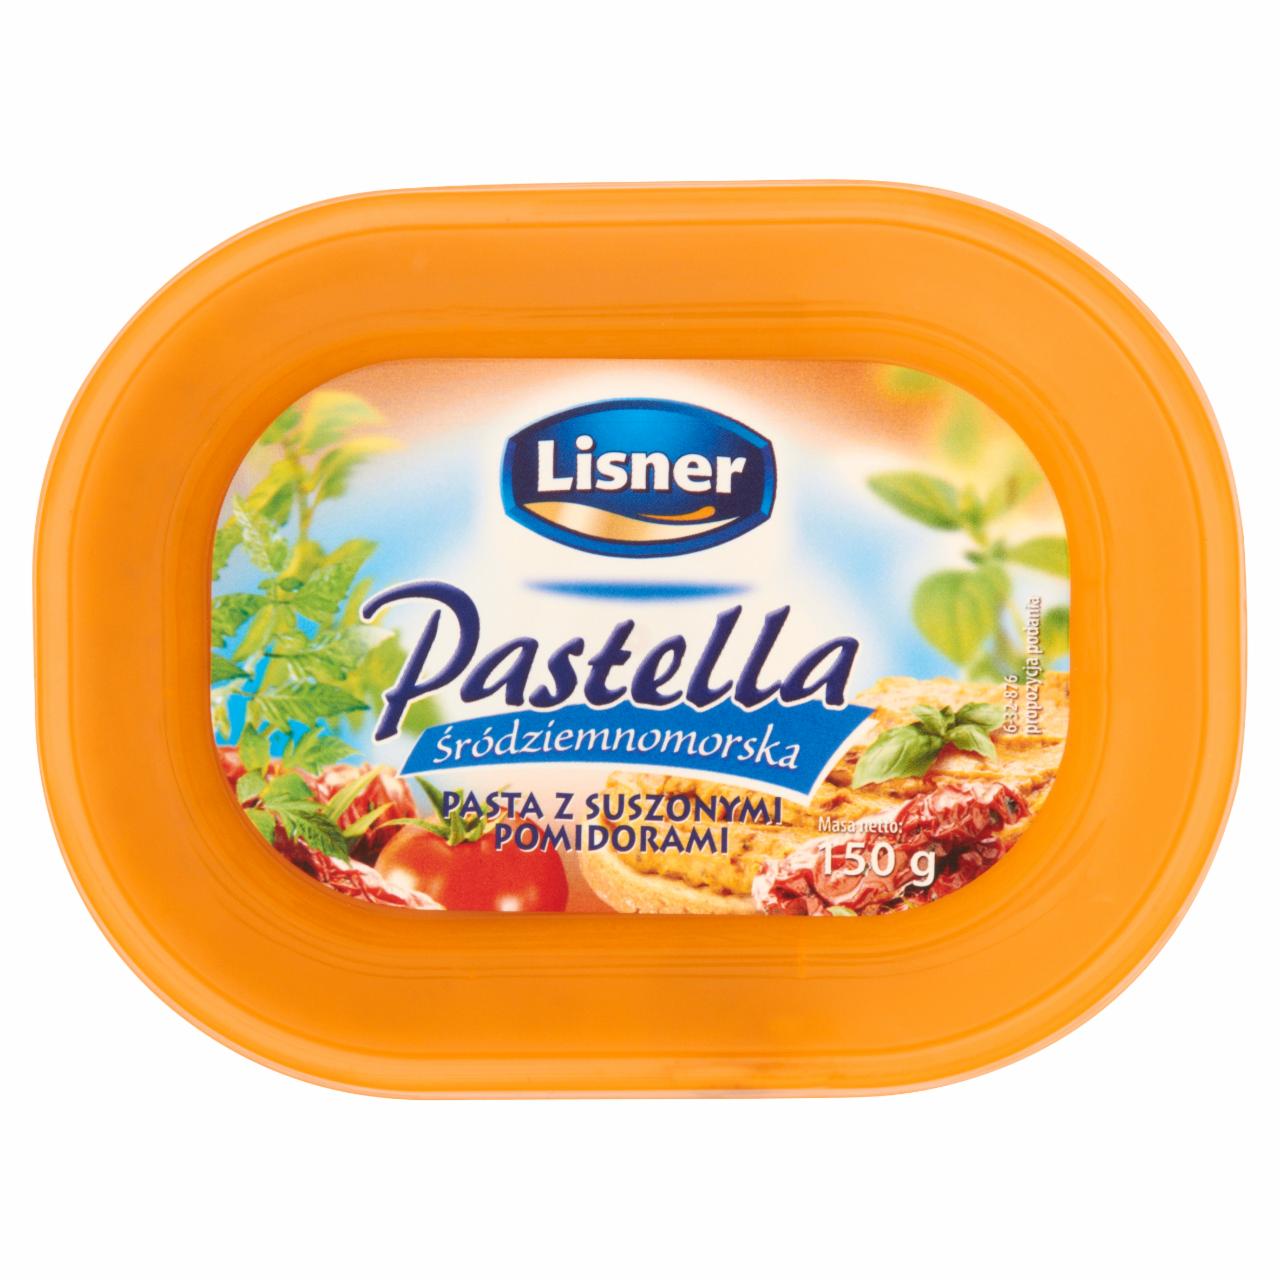 Zdjęcia - Lisner Pastella śródziemnomorska Pasta z suszonymi pomidorami 150 g